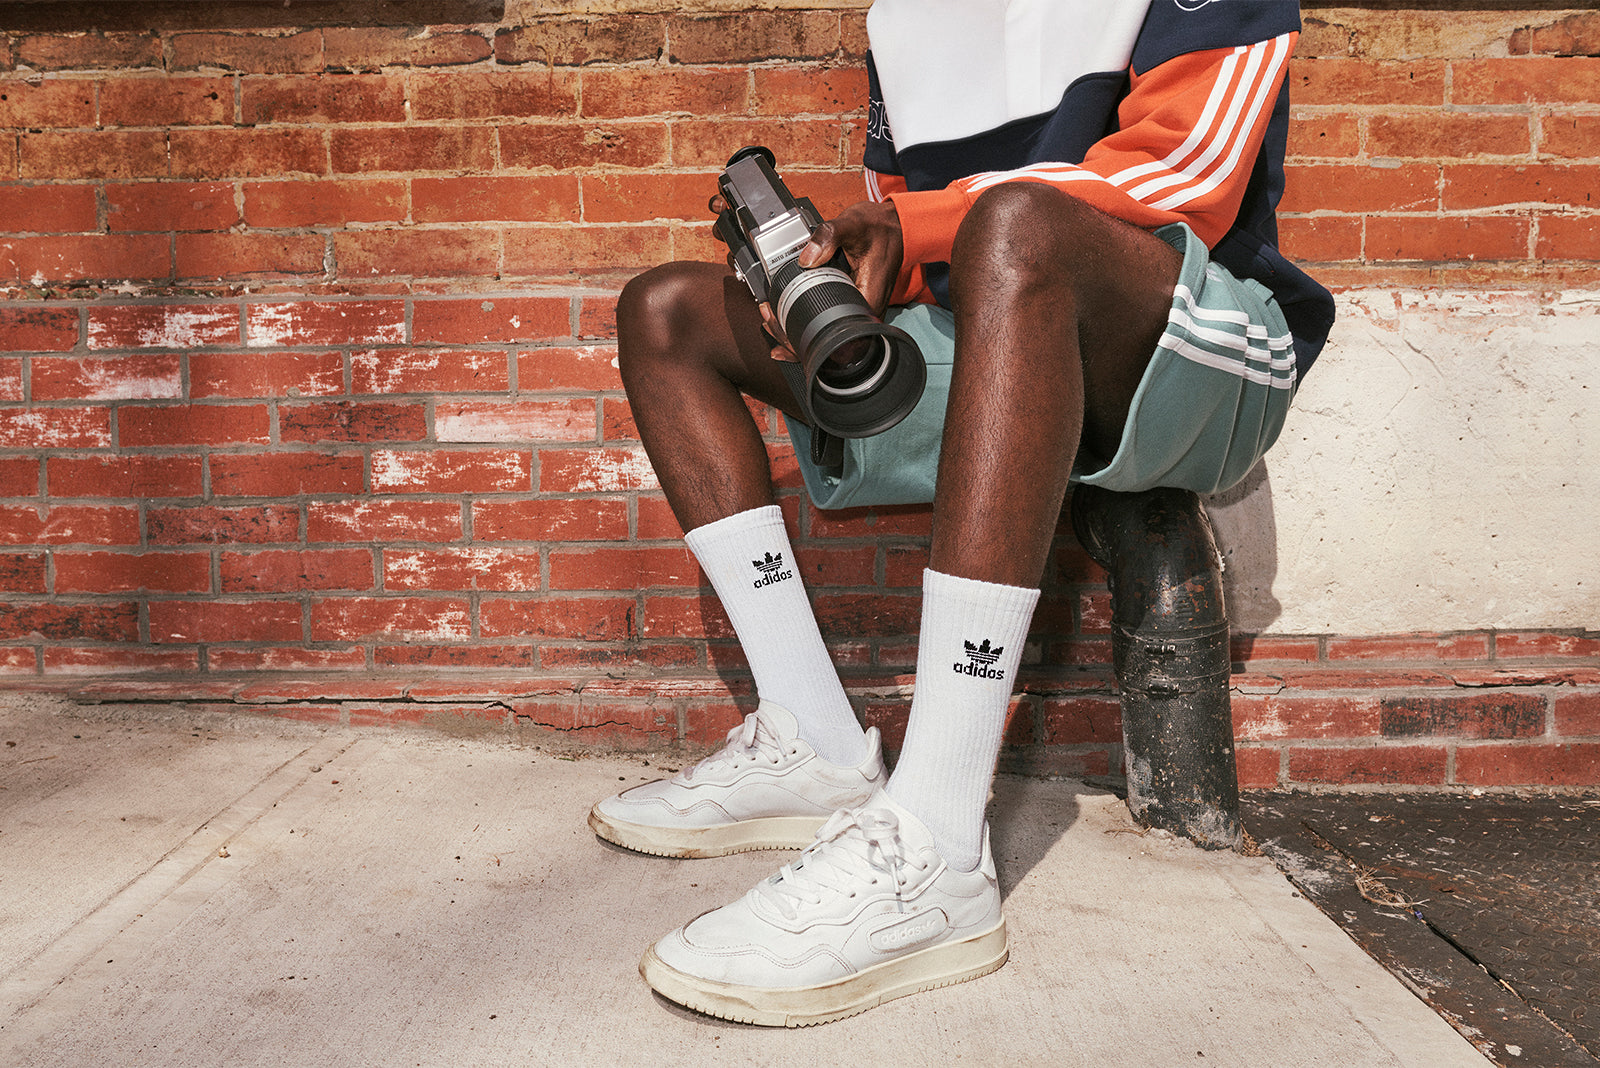 adidas sc premiere off white on feet